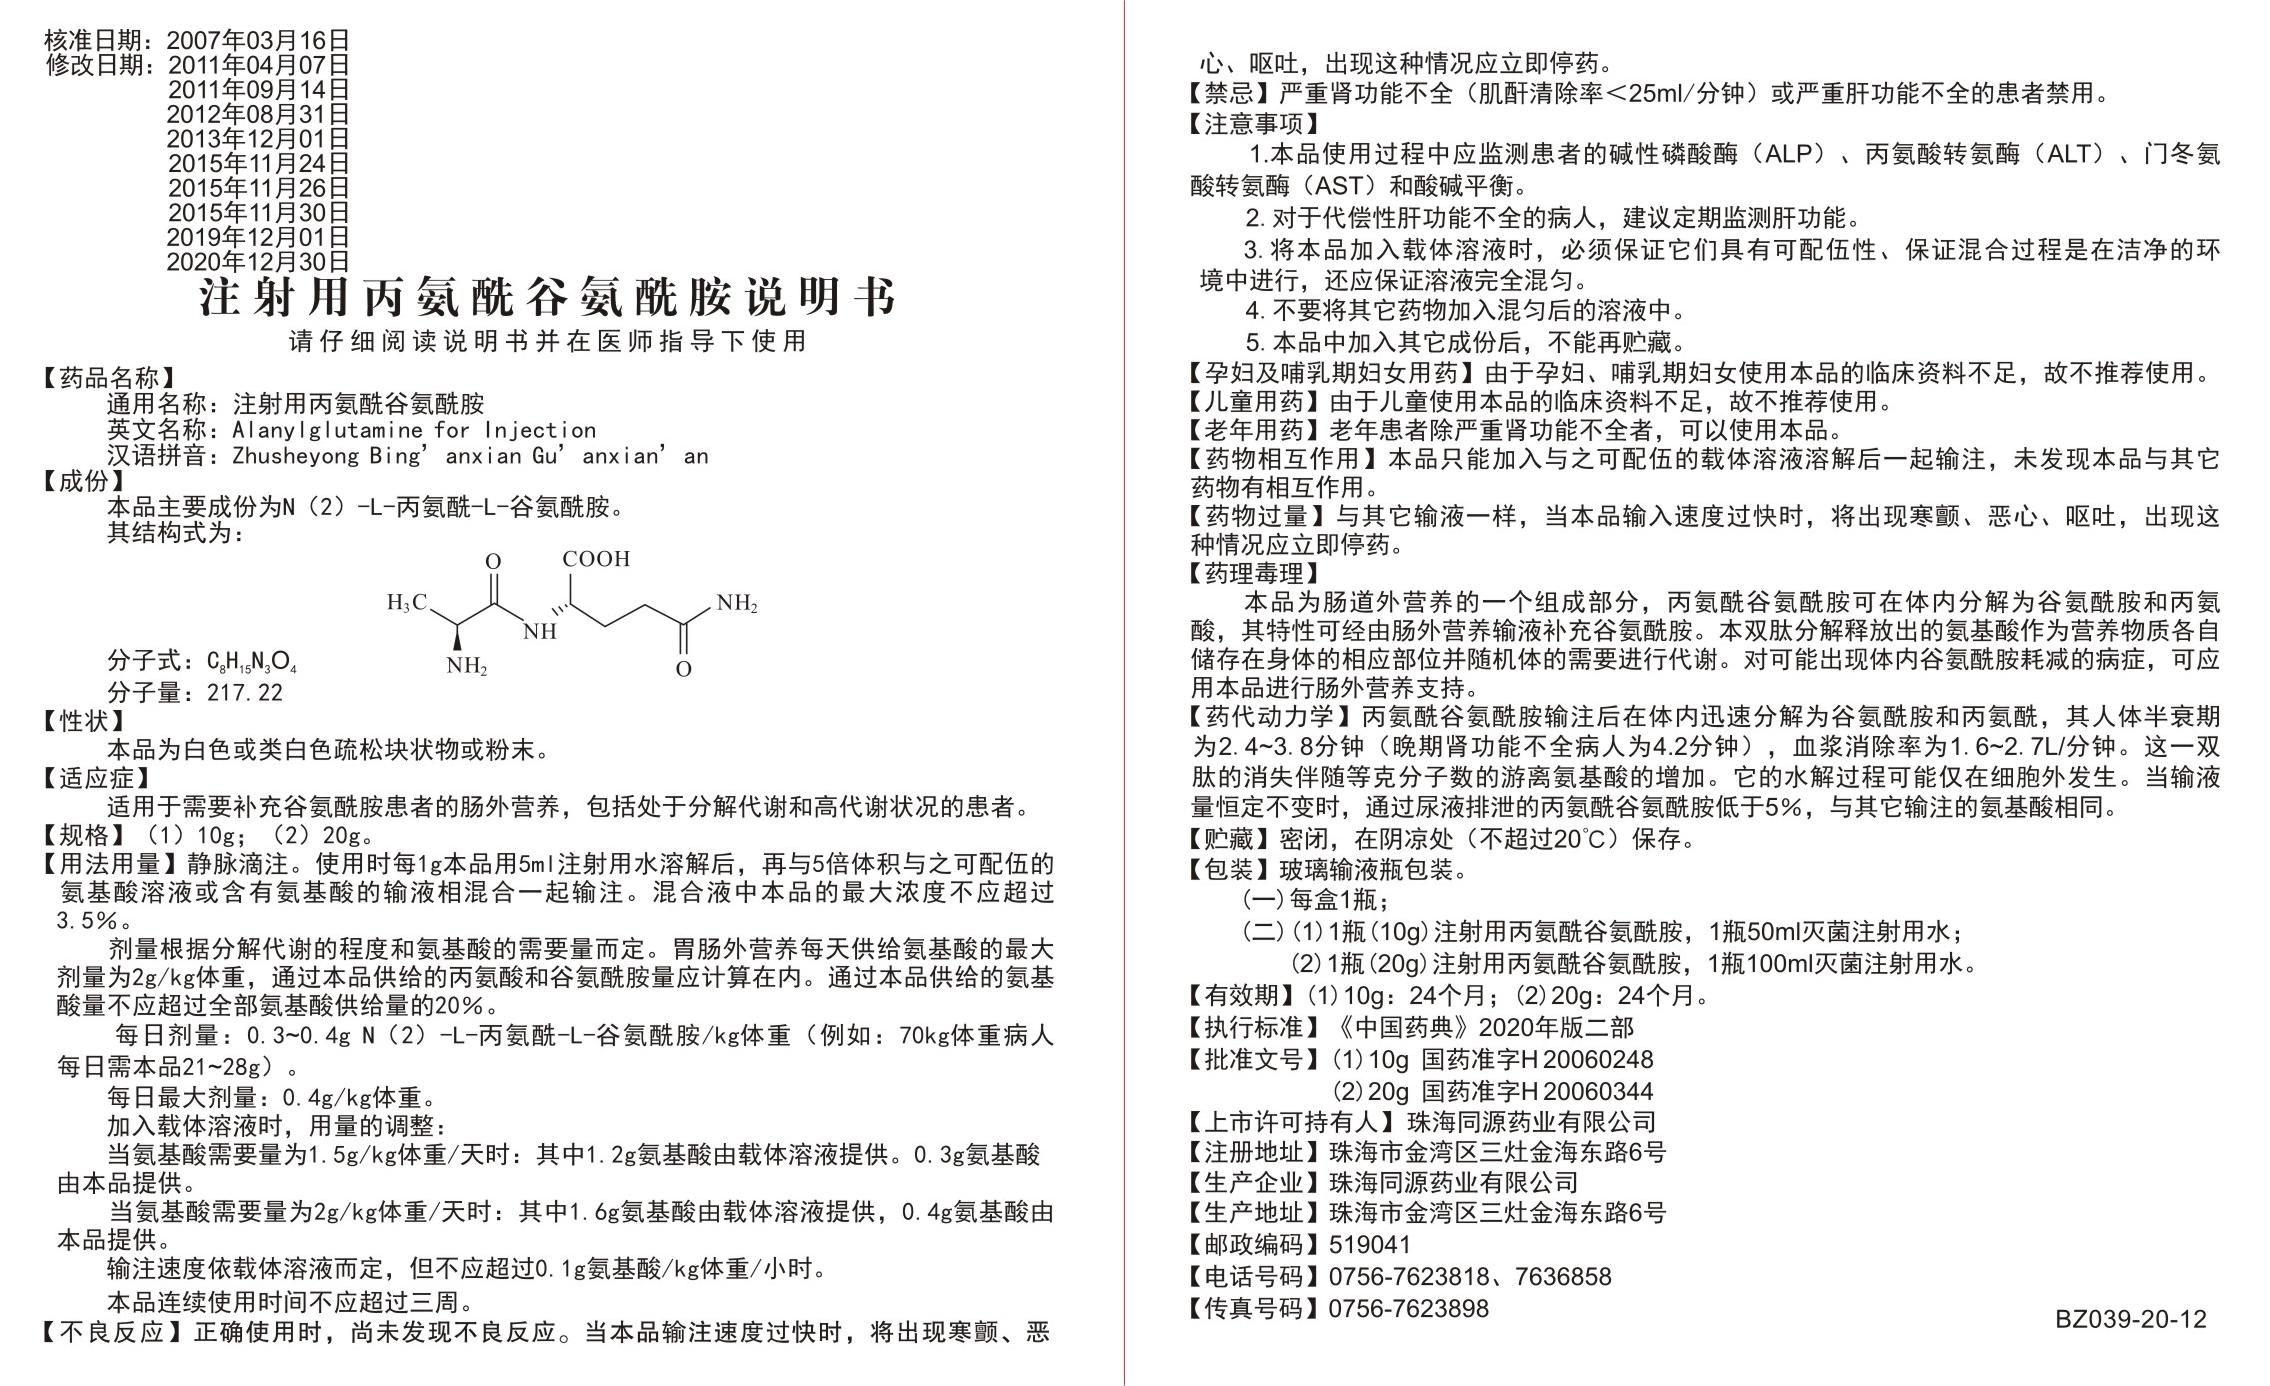 BZ039-20-12-注射用丙氨酰谷氨酰胺说明-20-12-04.jpg